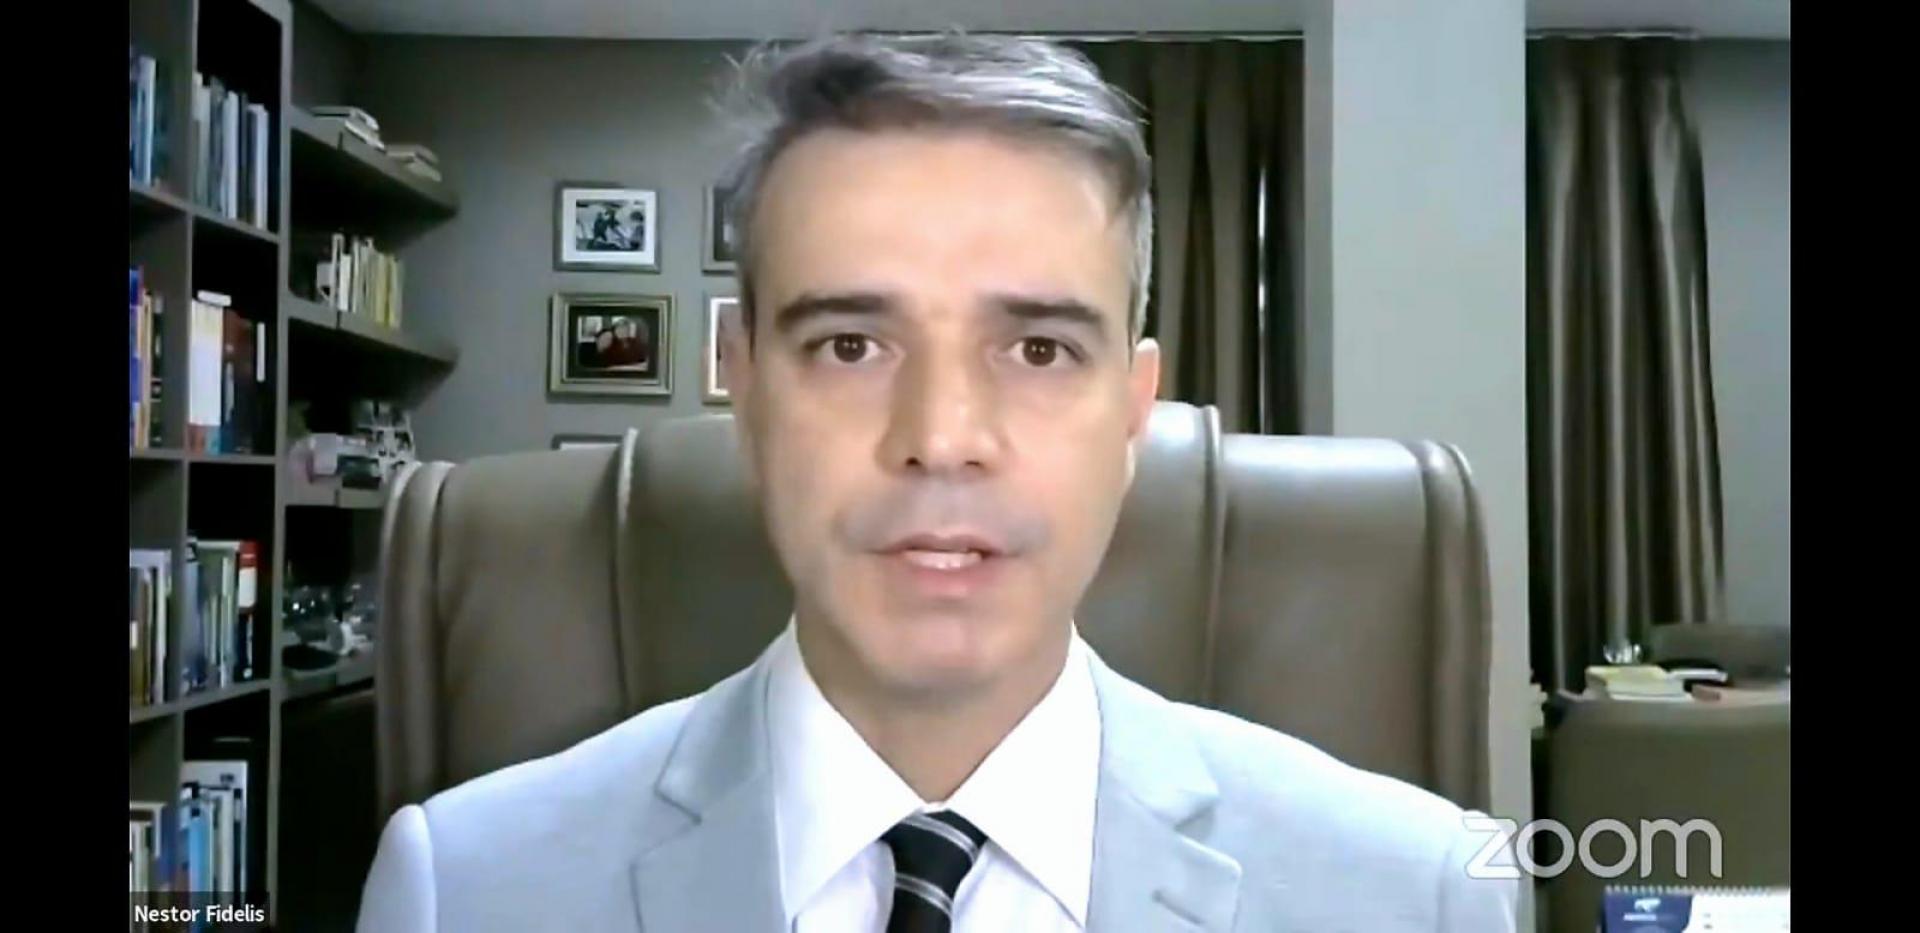 Nestor Fidelis como mediador